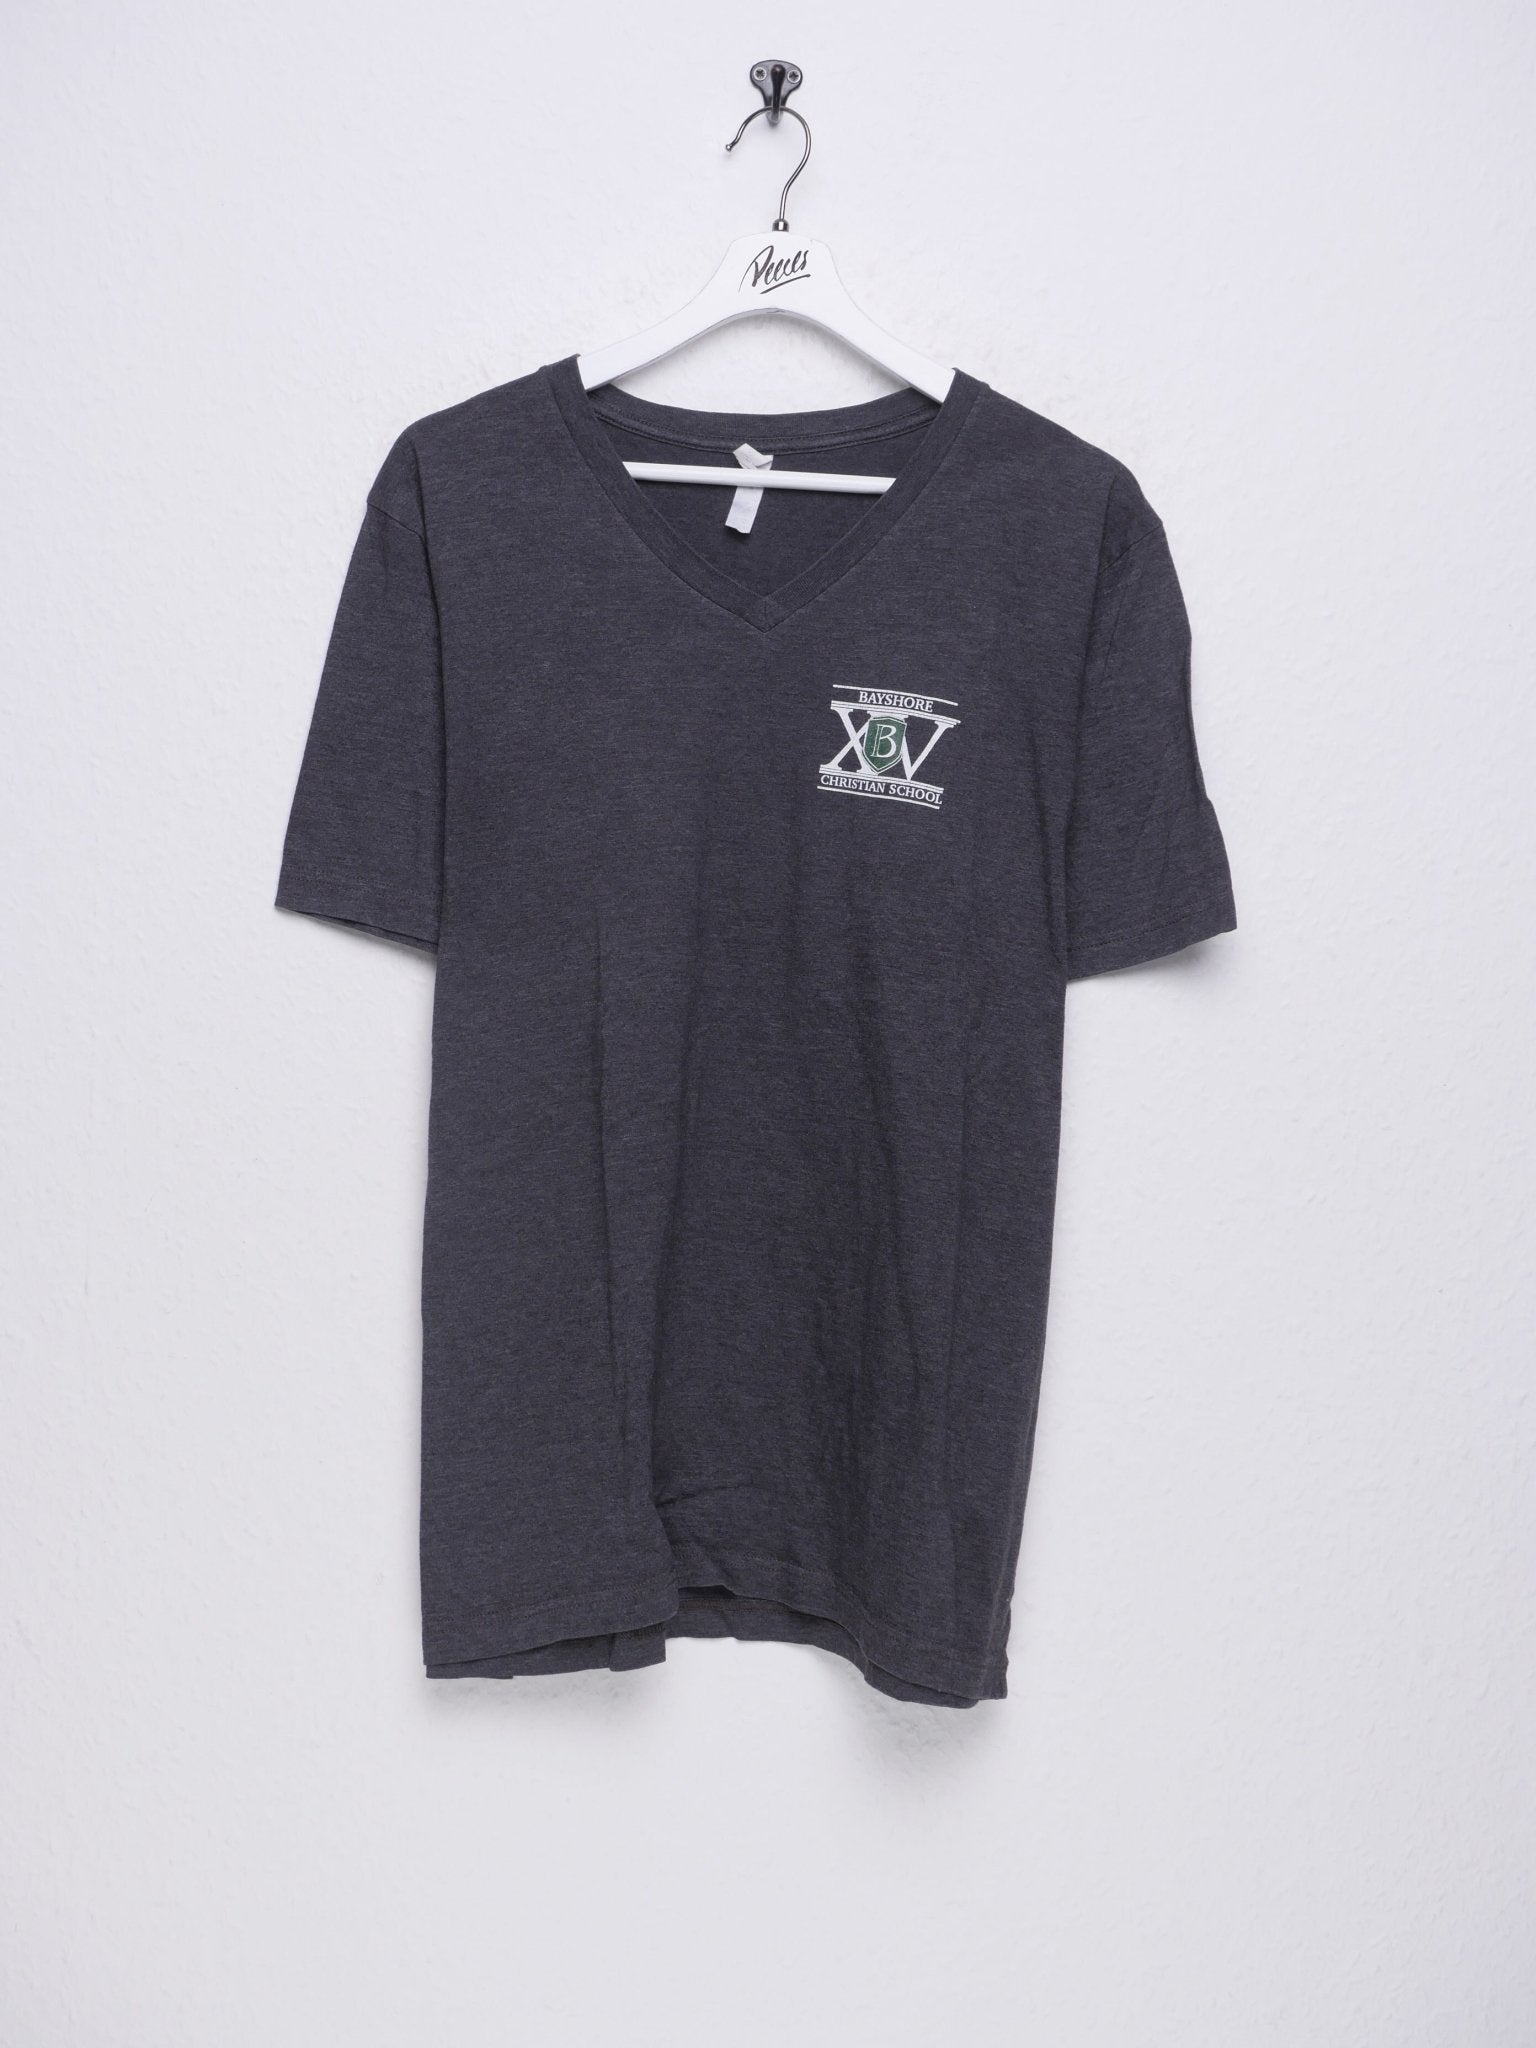 printed Logo grey Shirt - Peeces